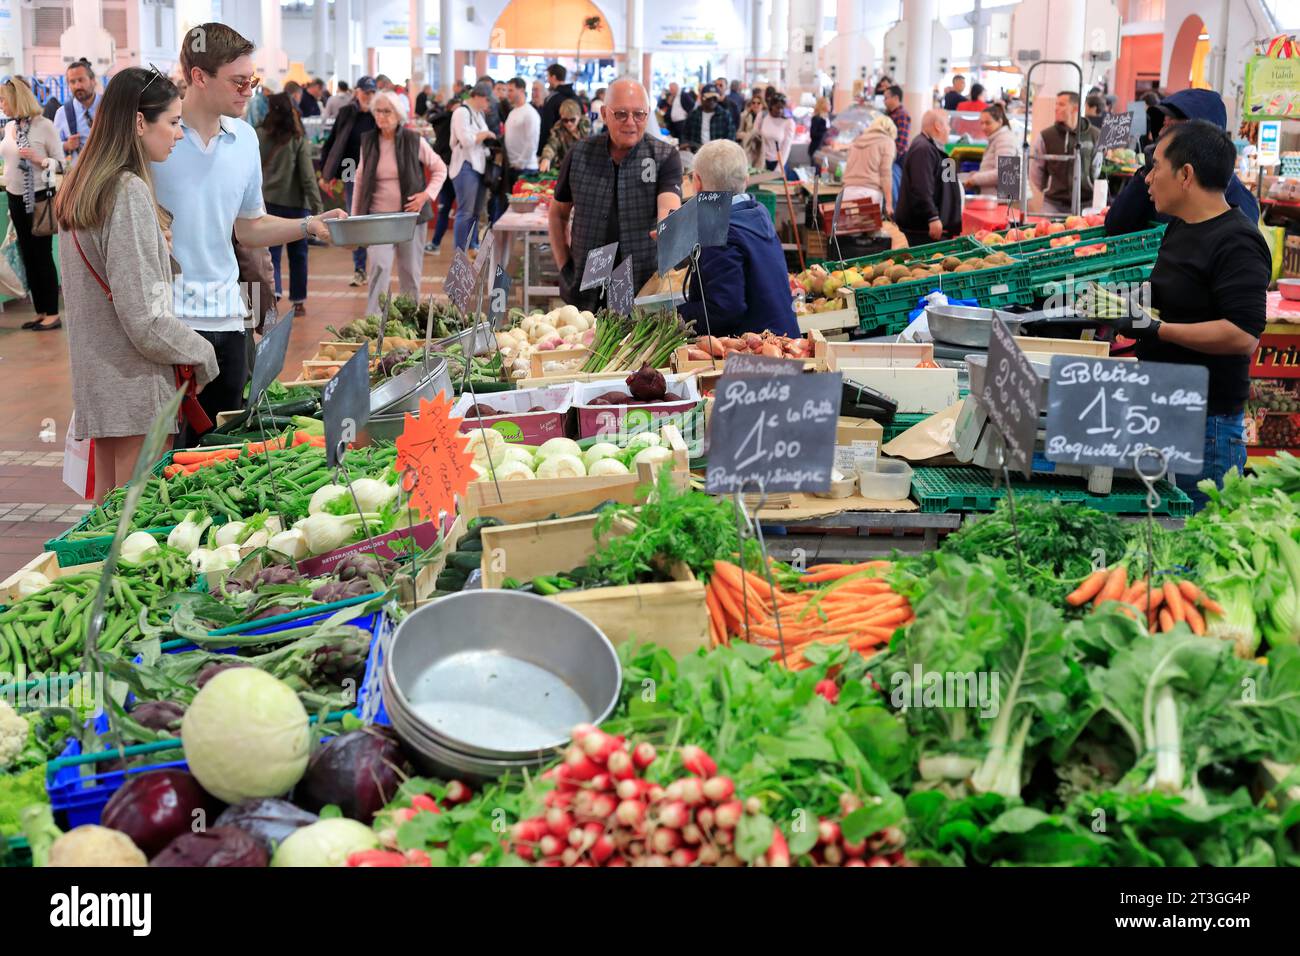 France, Alpes Maritimes, Cannes, Forville marché couvert (3 000 m2), marchand de légumes Banque D'Images